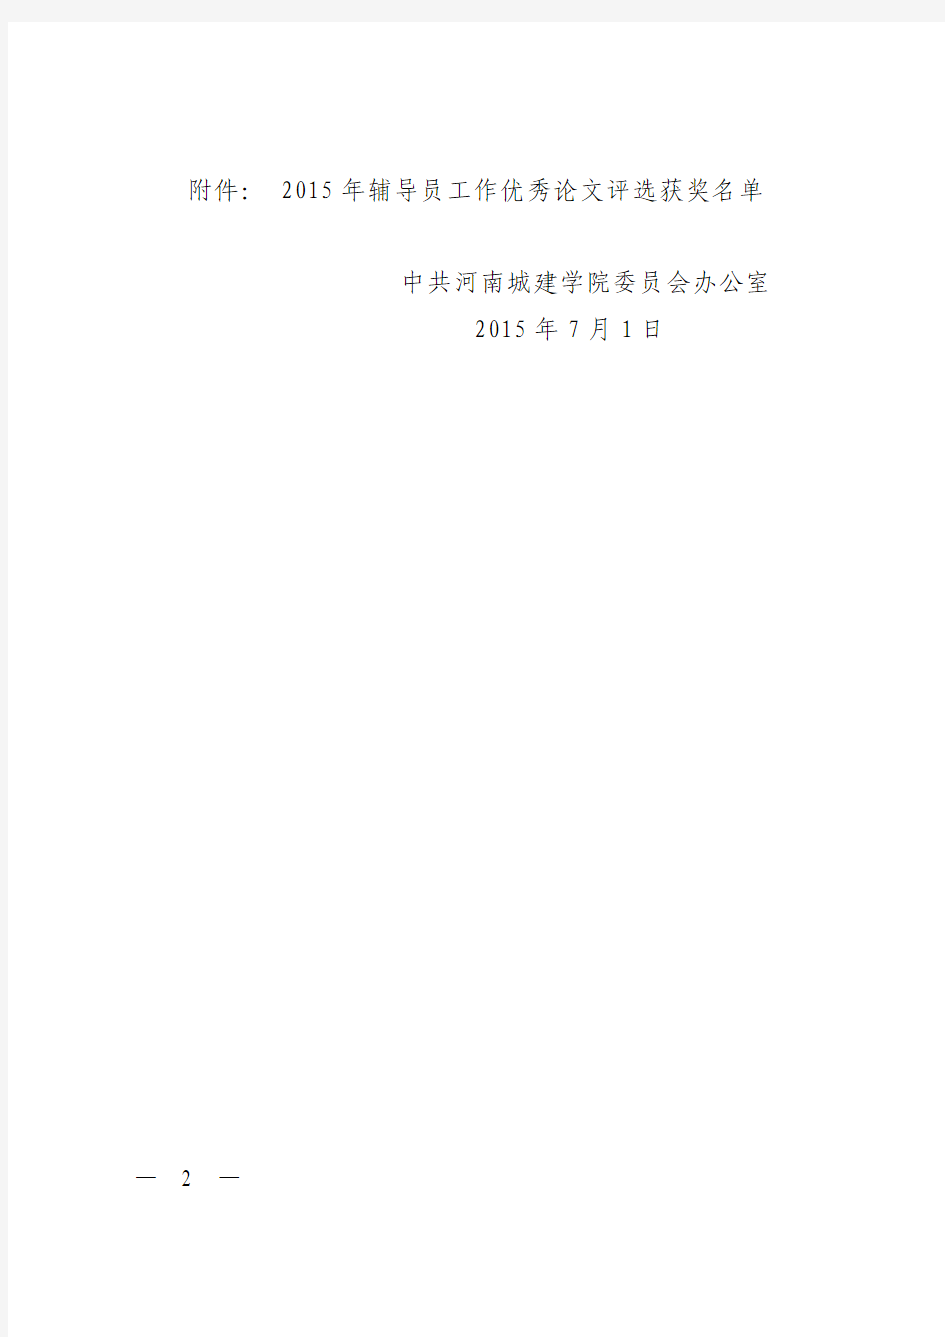 中共河南城建学院委员会办公室关于表彰2015年度辅导员优秀论文的决定